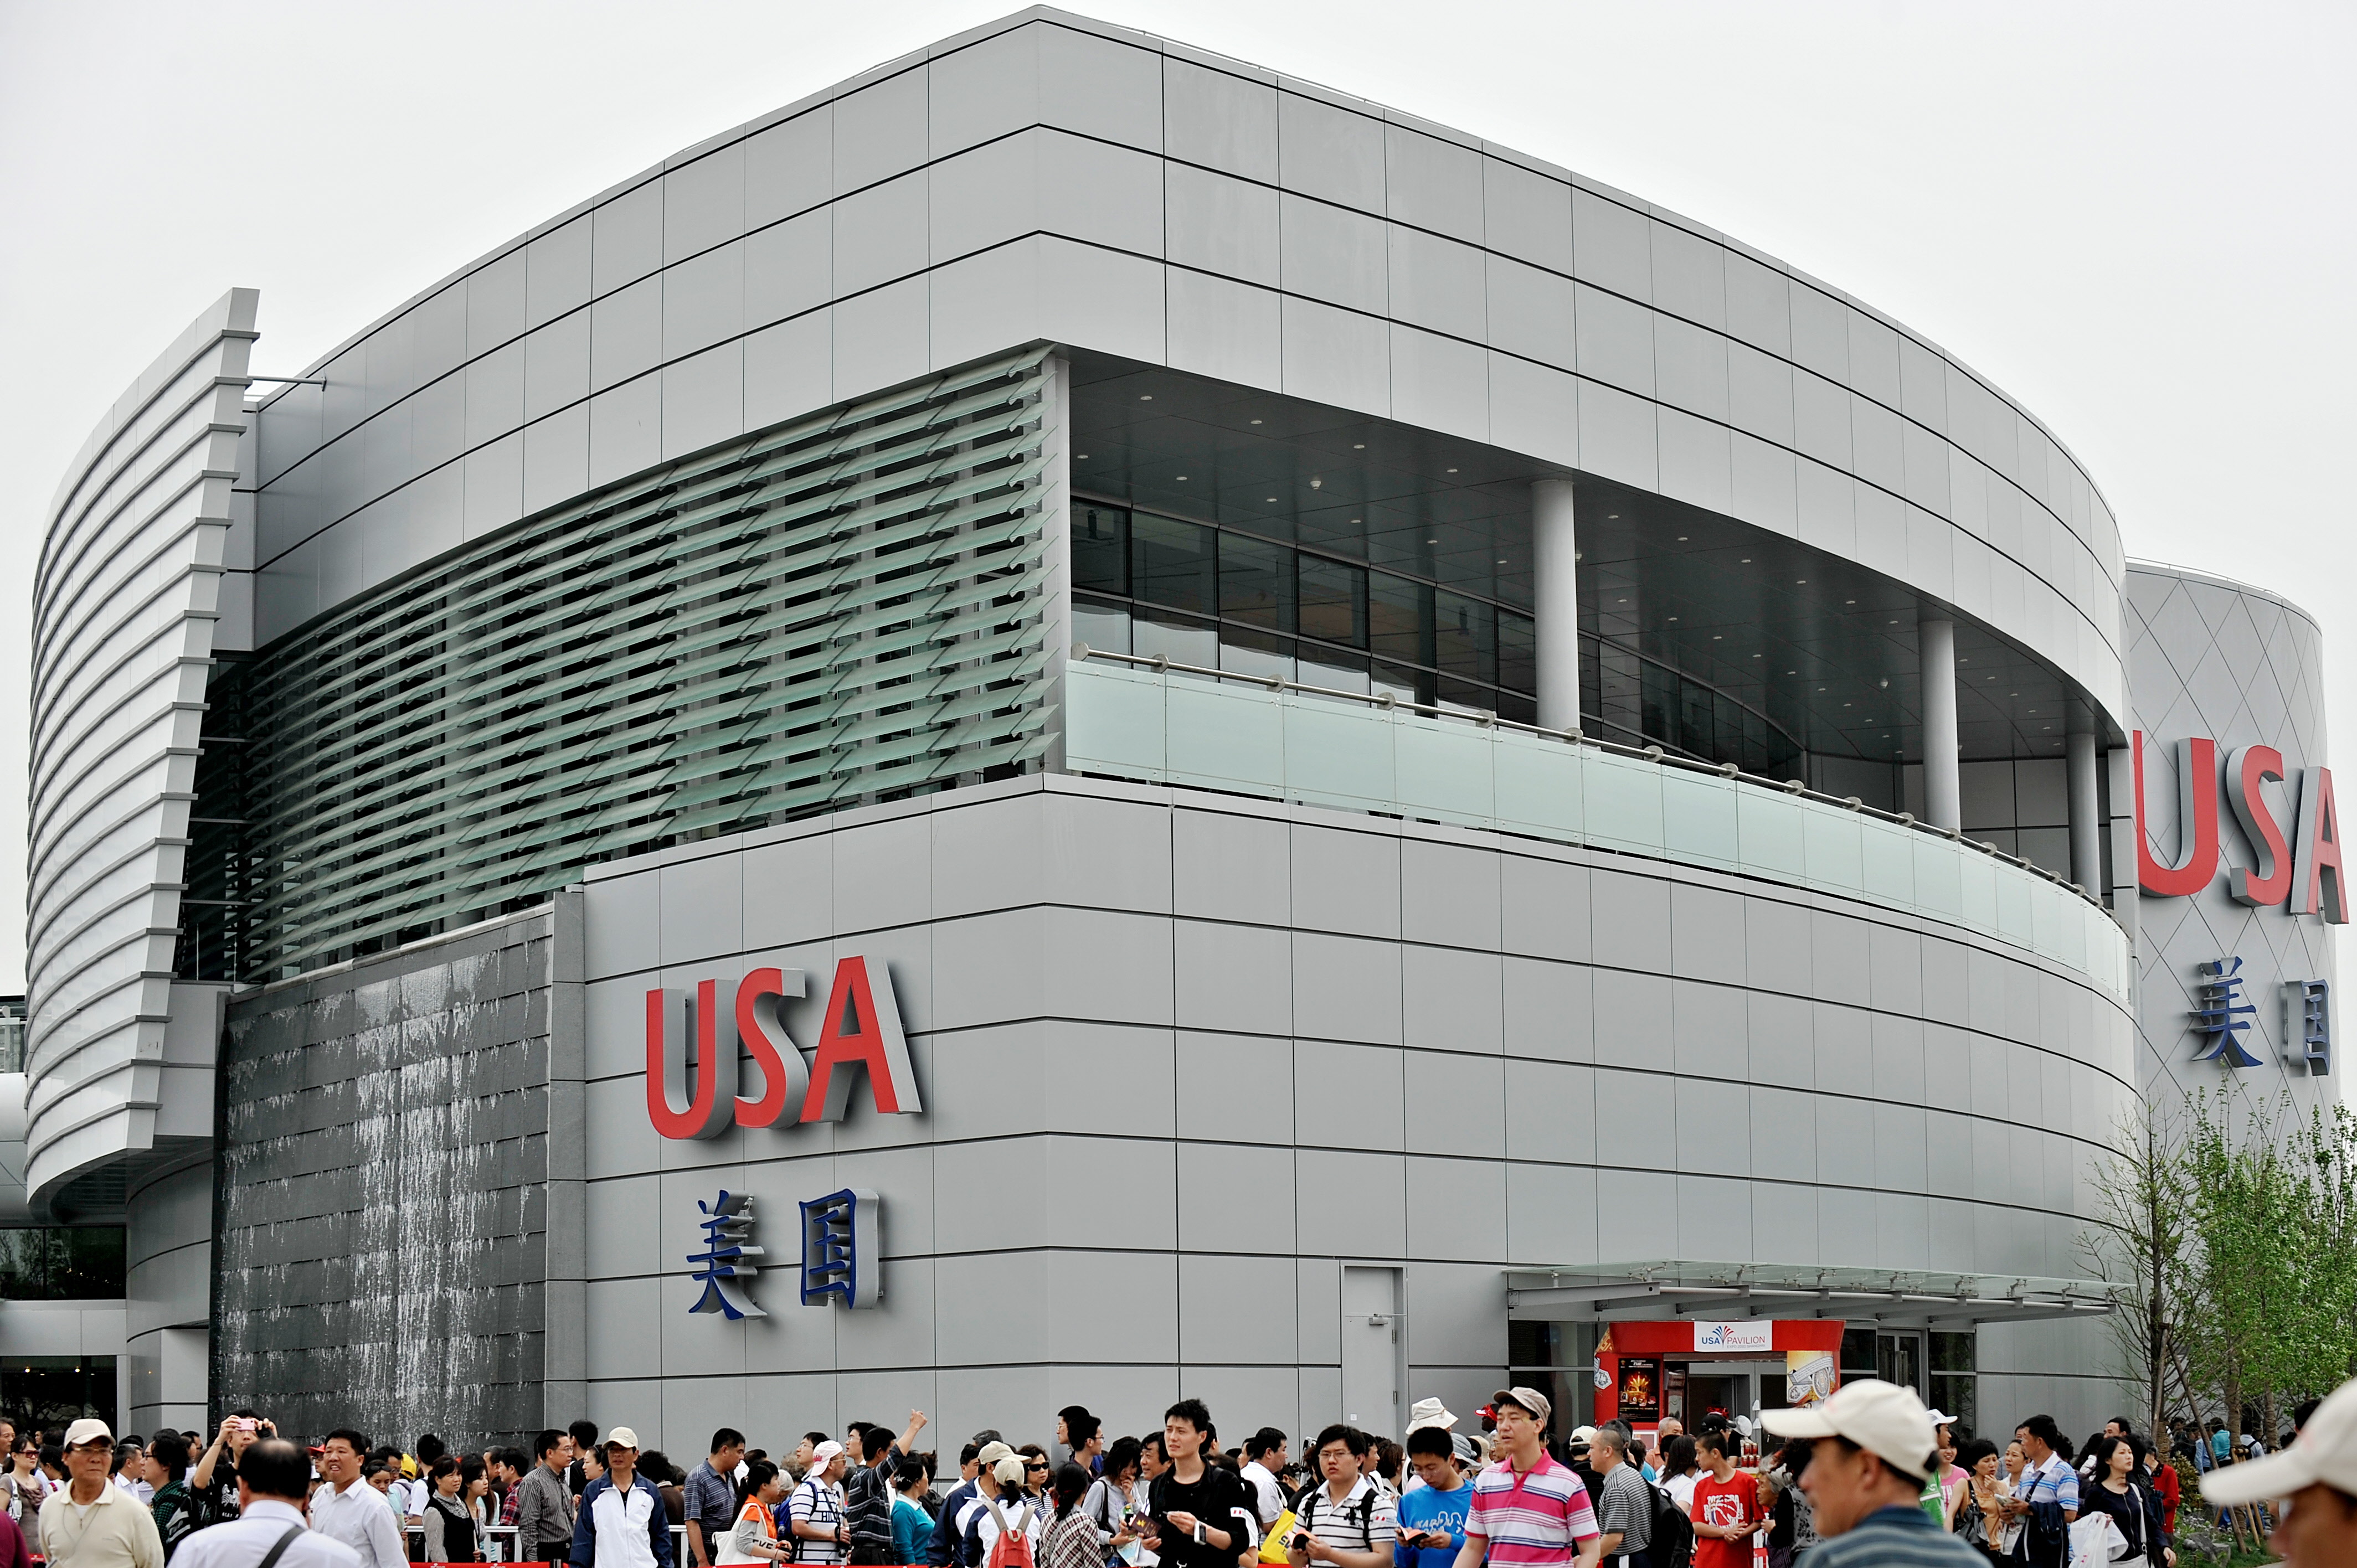 上海世博会美国馆其实是中共拿出近4亿人民币建造。